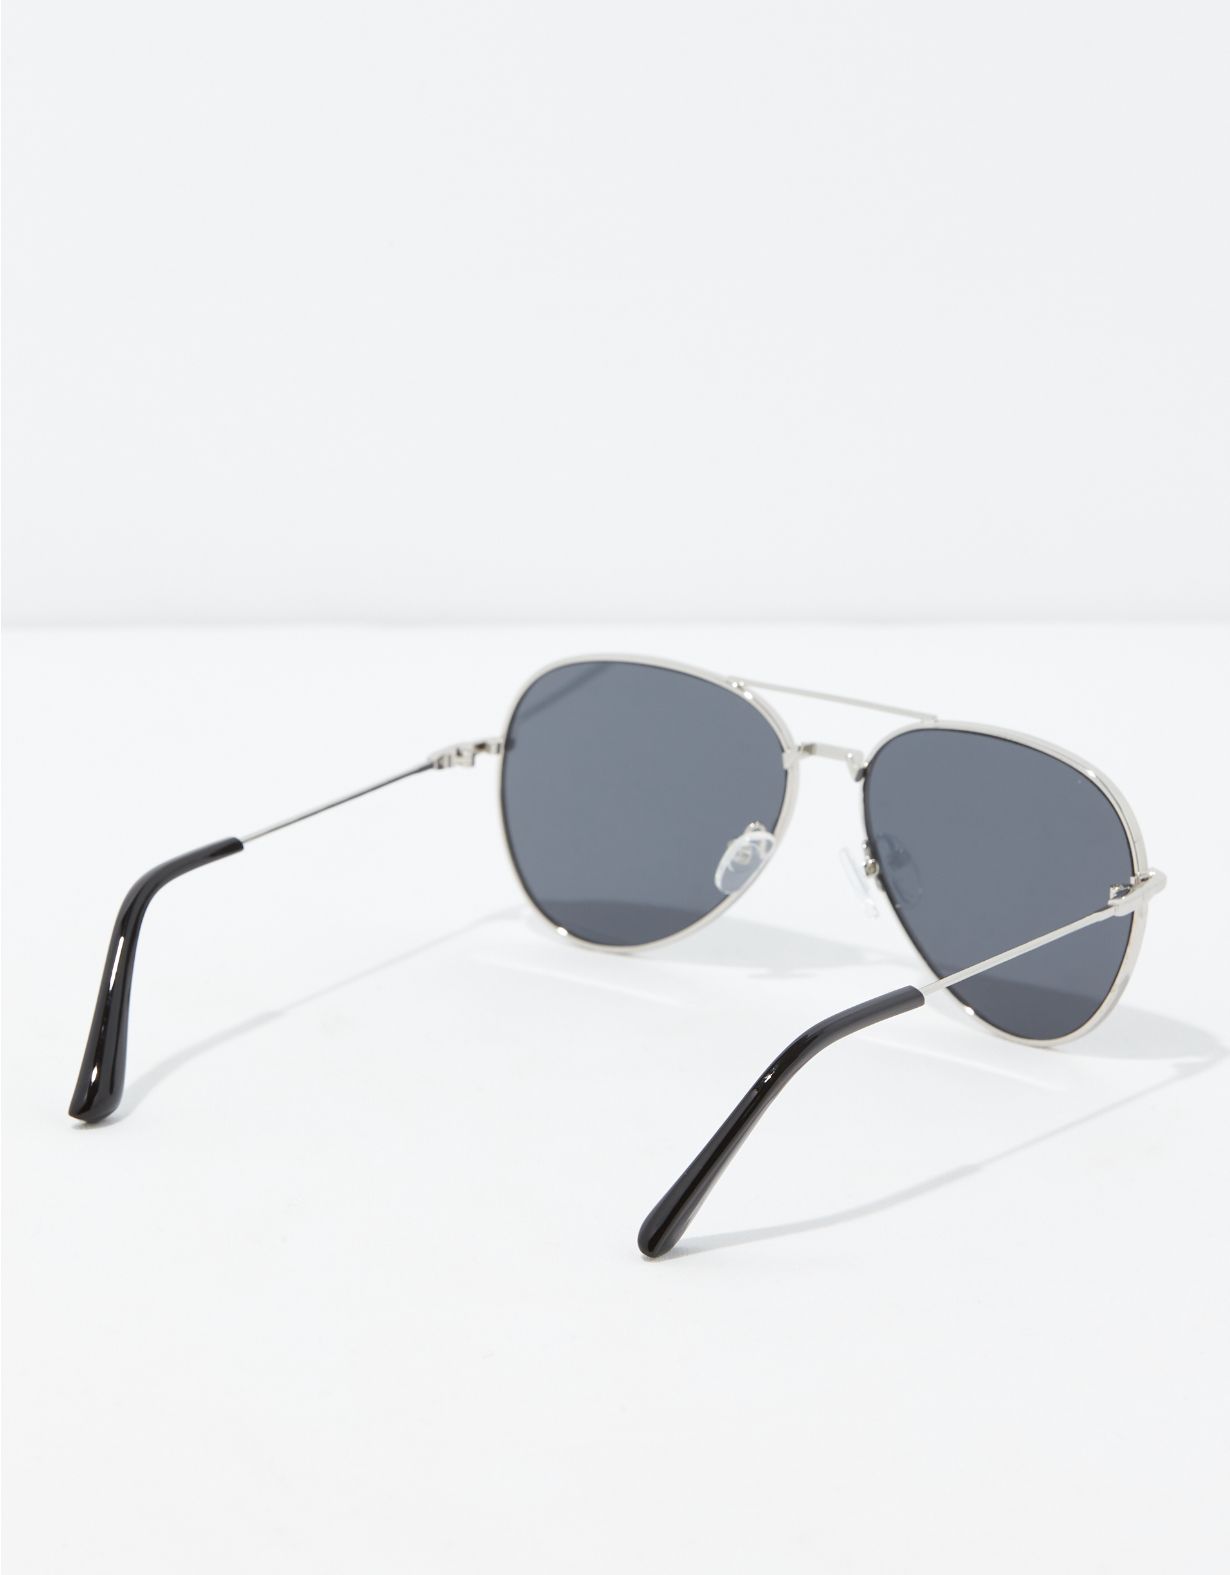 AEO Silver Sunglasses